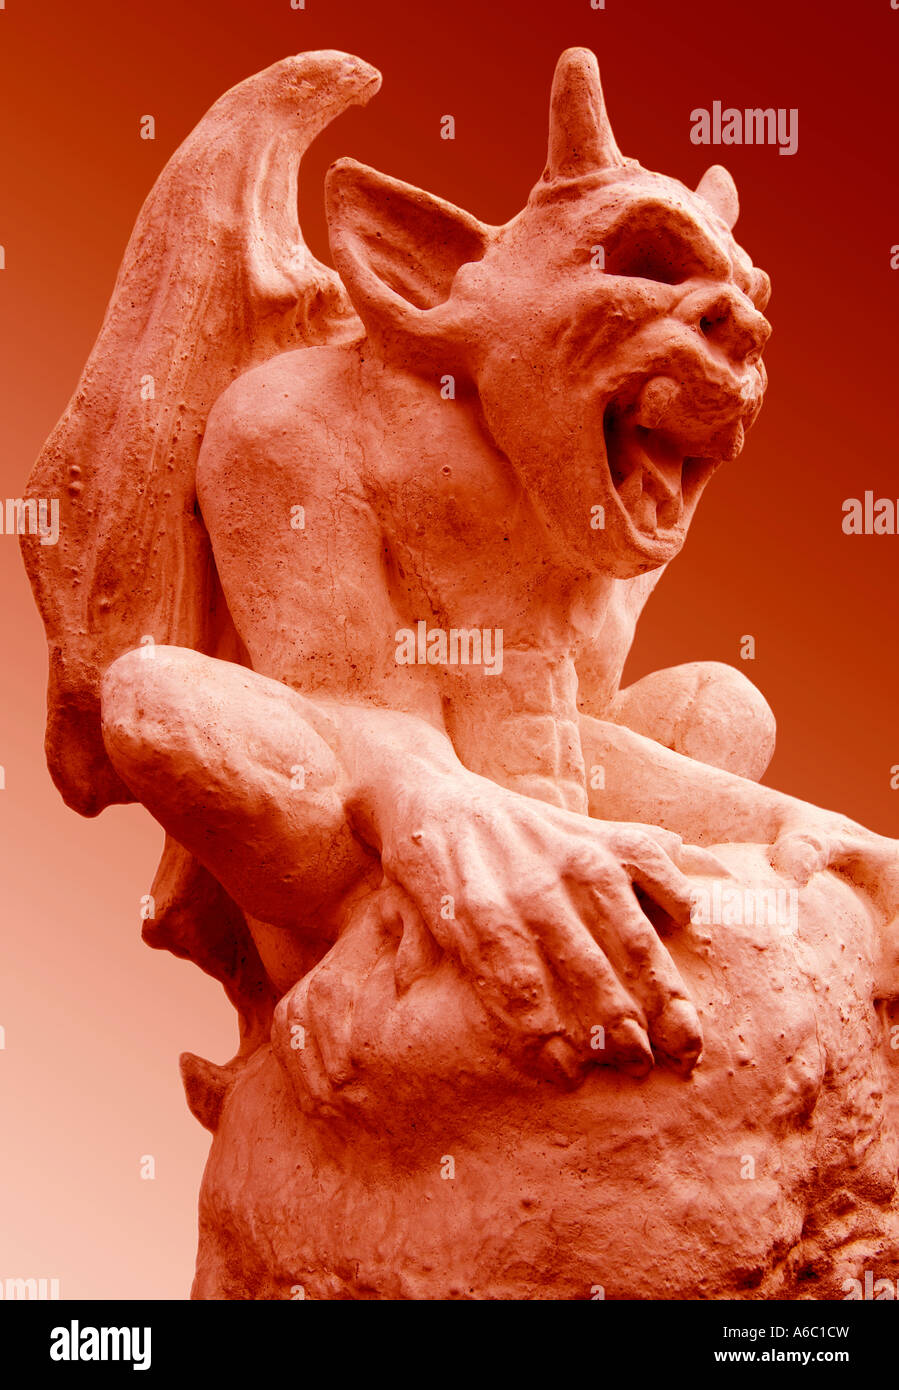 Ein erschreckender, dämonischer steinerner Wasserspeier Grimassen vor einem roten Hintergrund. Stockfoto